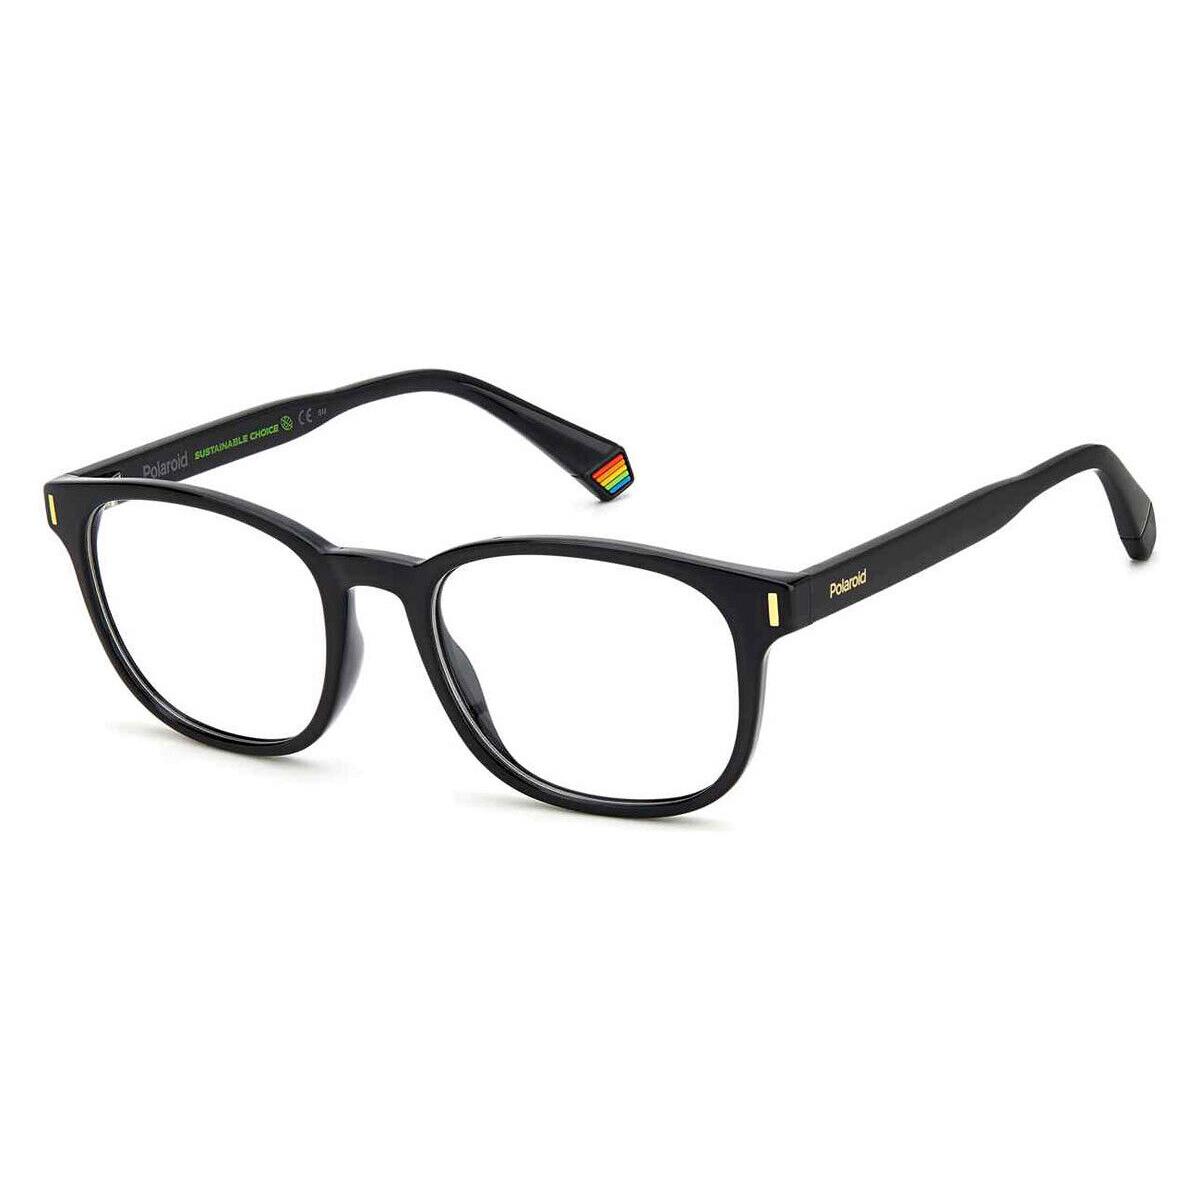 Polaroid D453 Eyeglasses RX Men Black Square 52mm